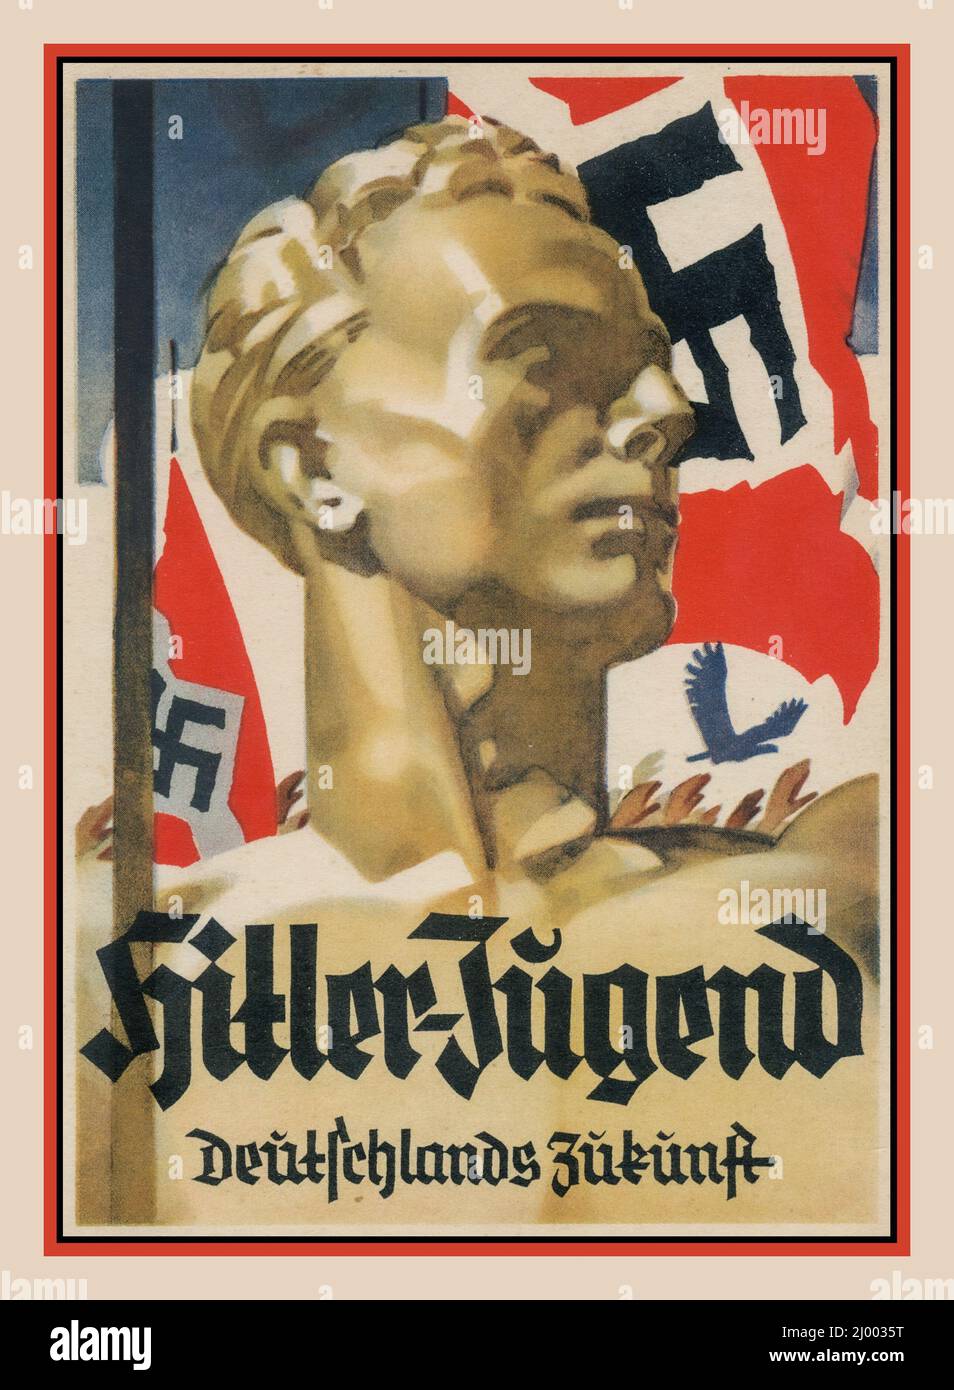 Nazi Hitler-Jugend 1930s Allemagne nazie Hitler affiche de la carte de propagande de la jeunesse avec le drapeau de Swastika et intitulé HITLER-JUGEND Deutschlands Zukunft, l'avenir de l'Allemagne. Blonde FIT aryan jeune présenté comme l'idéal idéal de l'Allemagne nazie parfait Banque D'Images